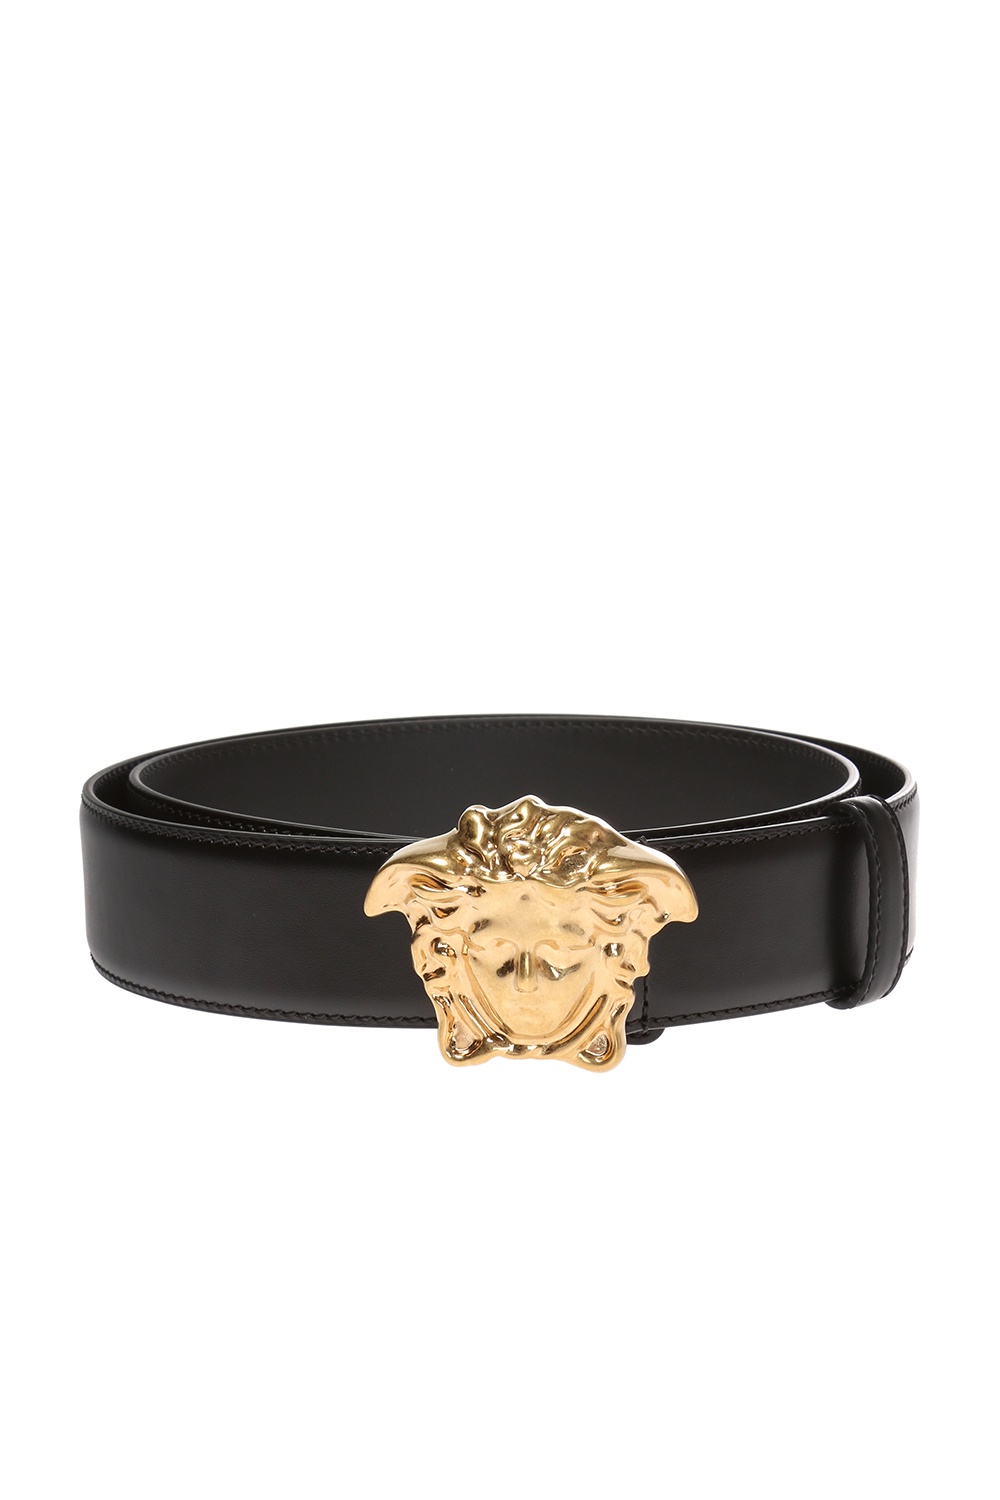 Versace Medusa head belt